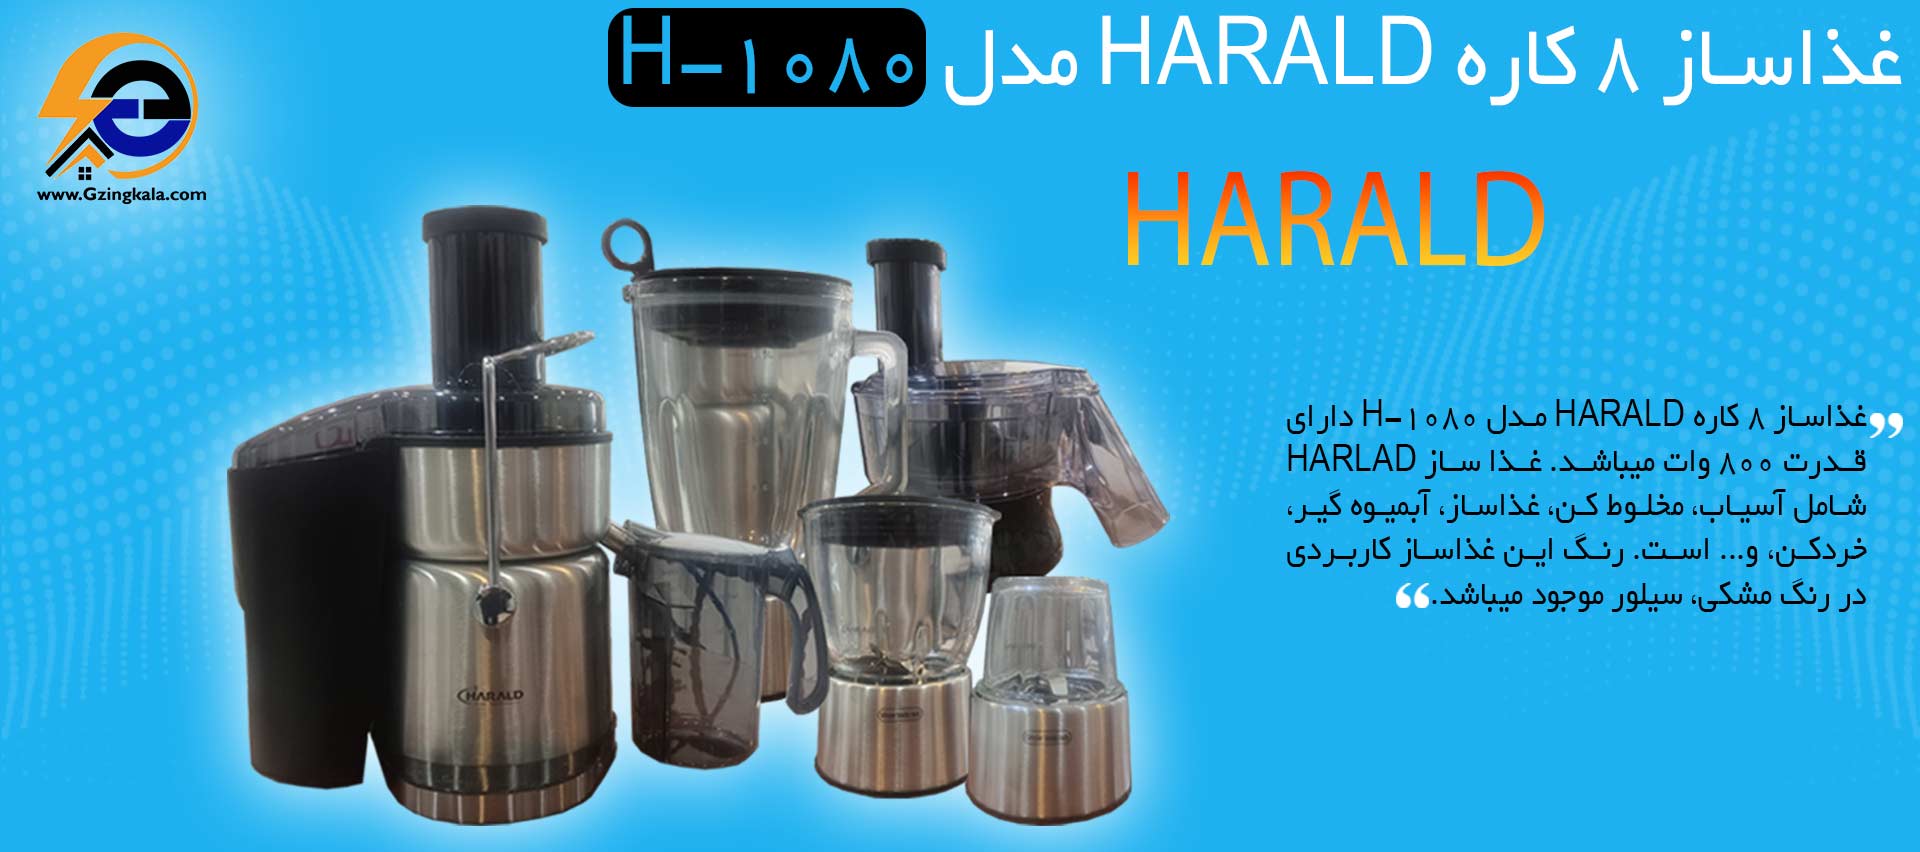 غذاساز 8 کاره HARALD مدل H-1080